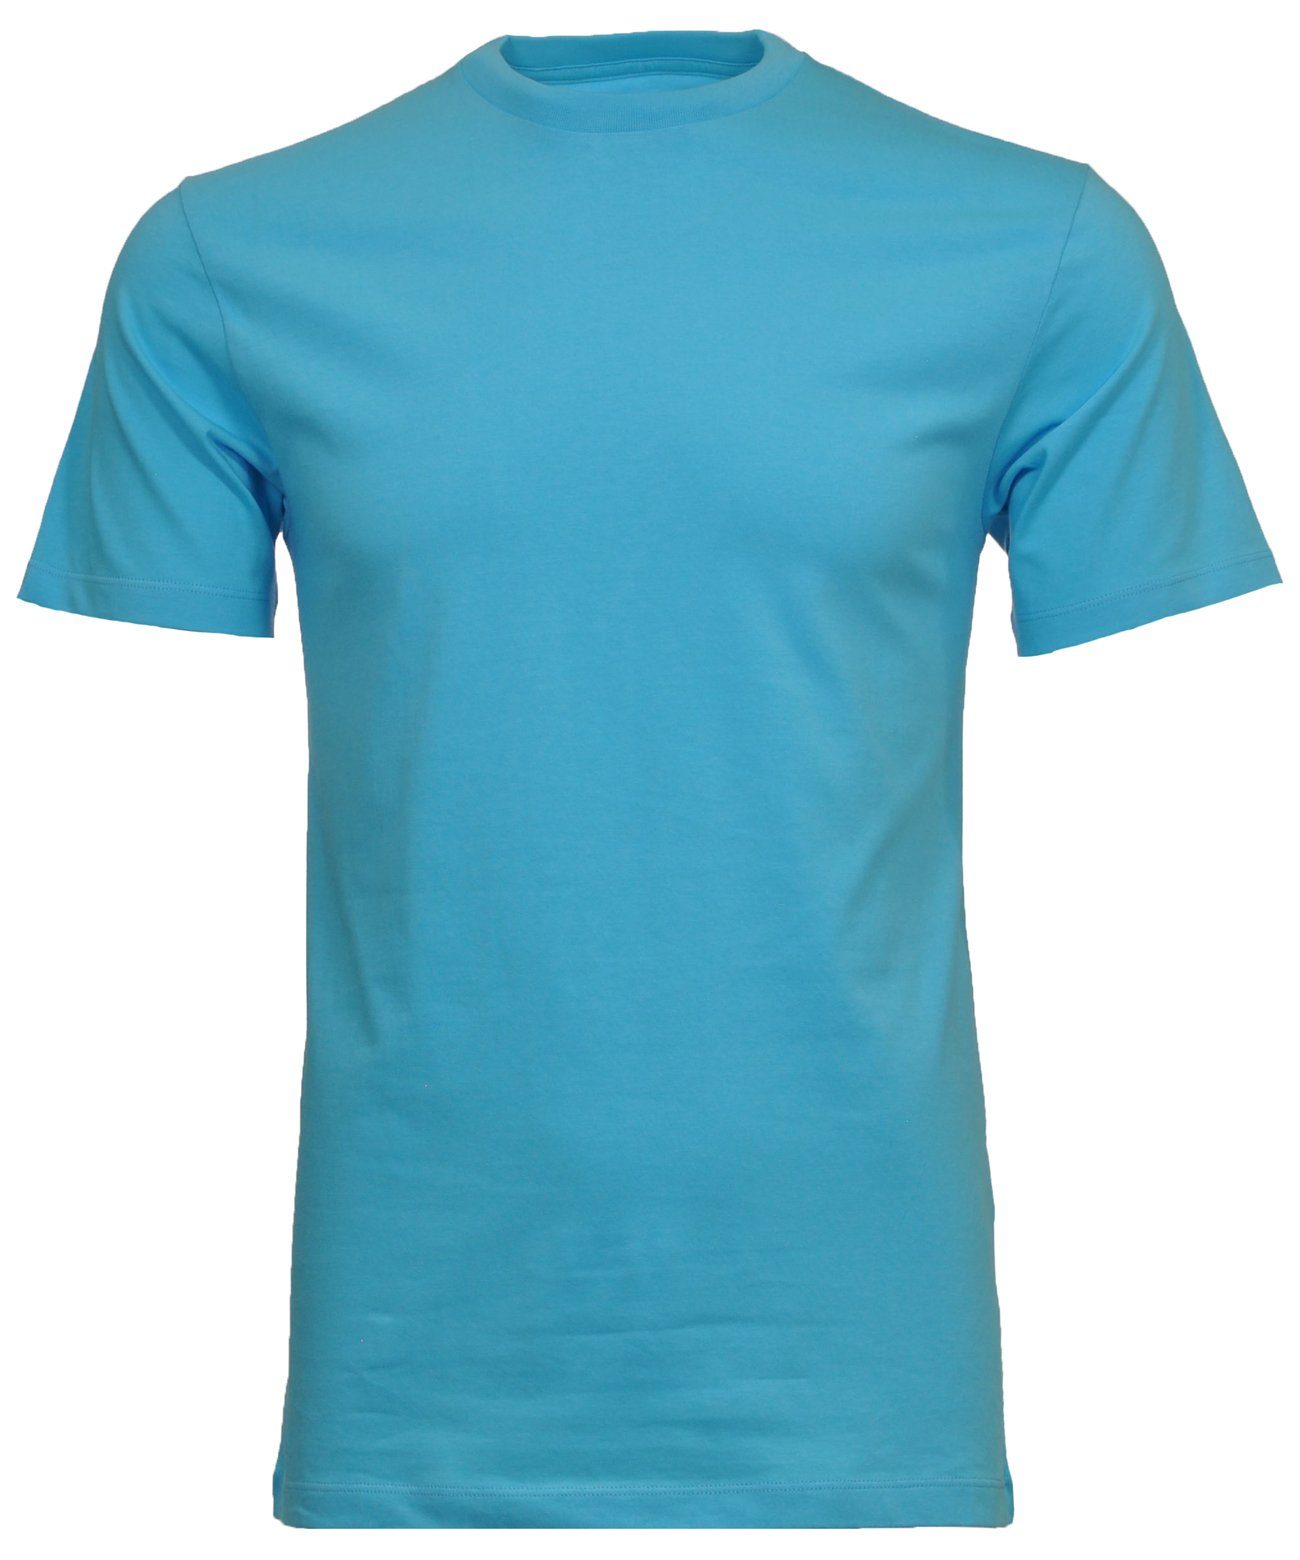 RAGMAN Longshirt Aqua-745 | T-Shirts